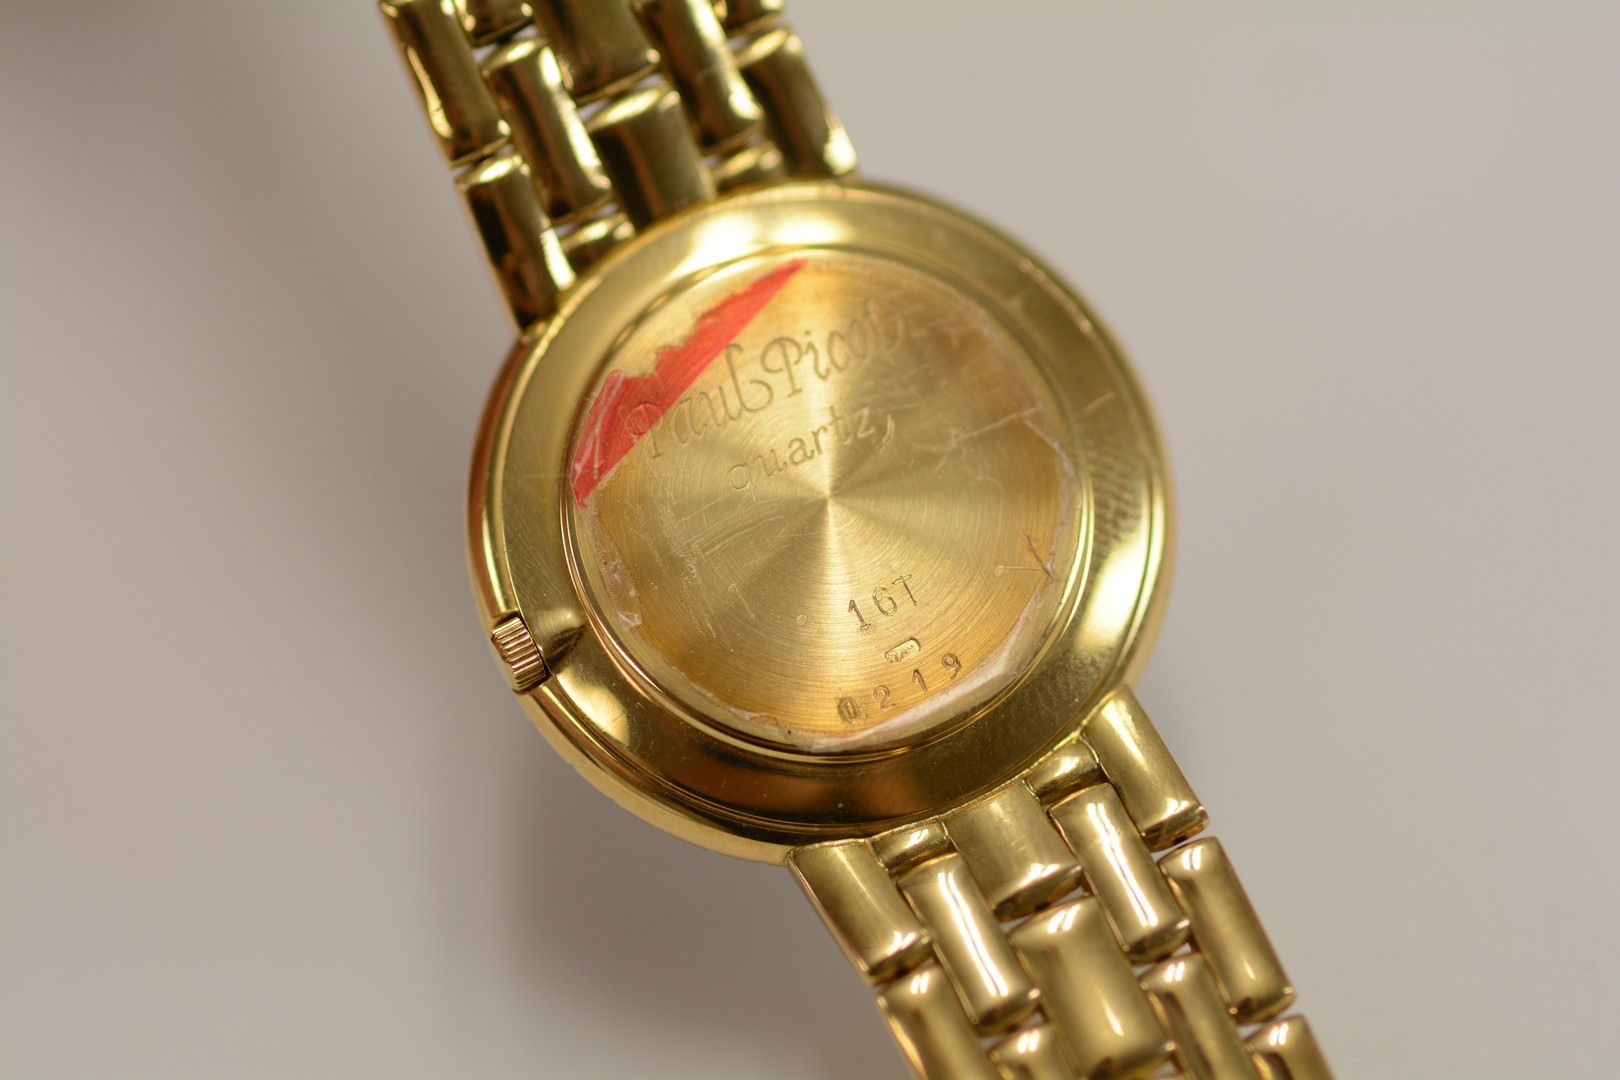 Paul Picot / Diamond - Lady's Yellow gold Wrist Watch - Image 2 of 16